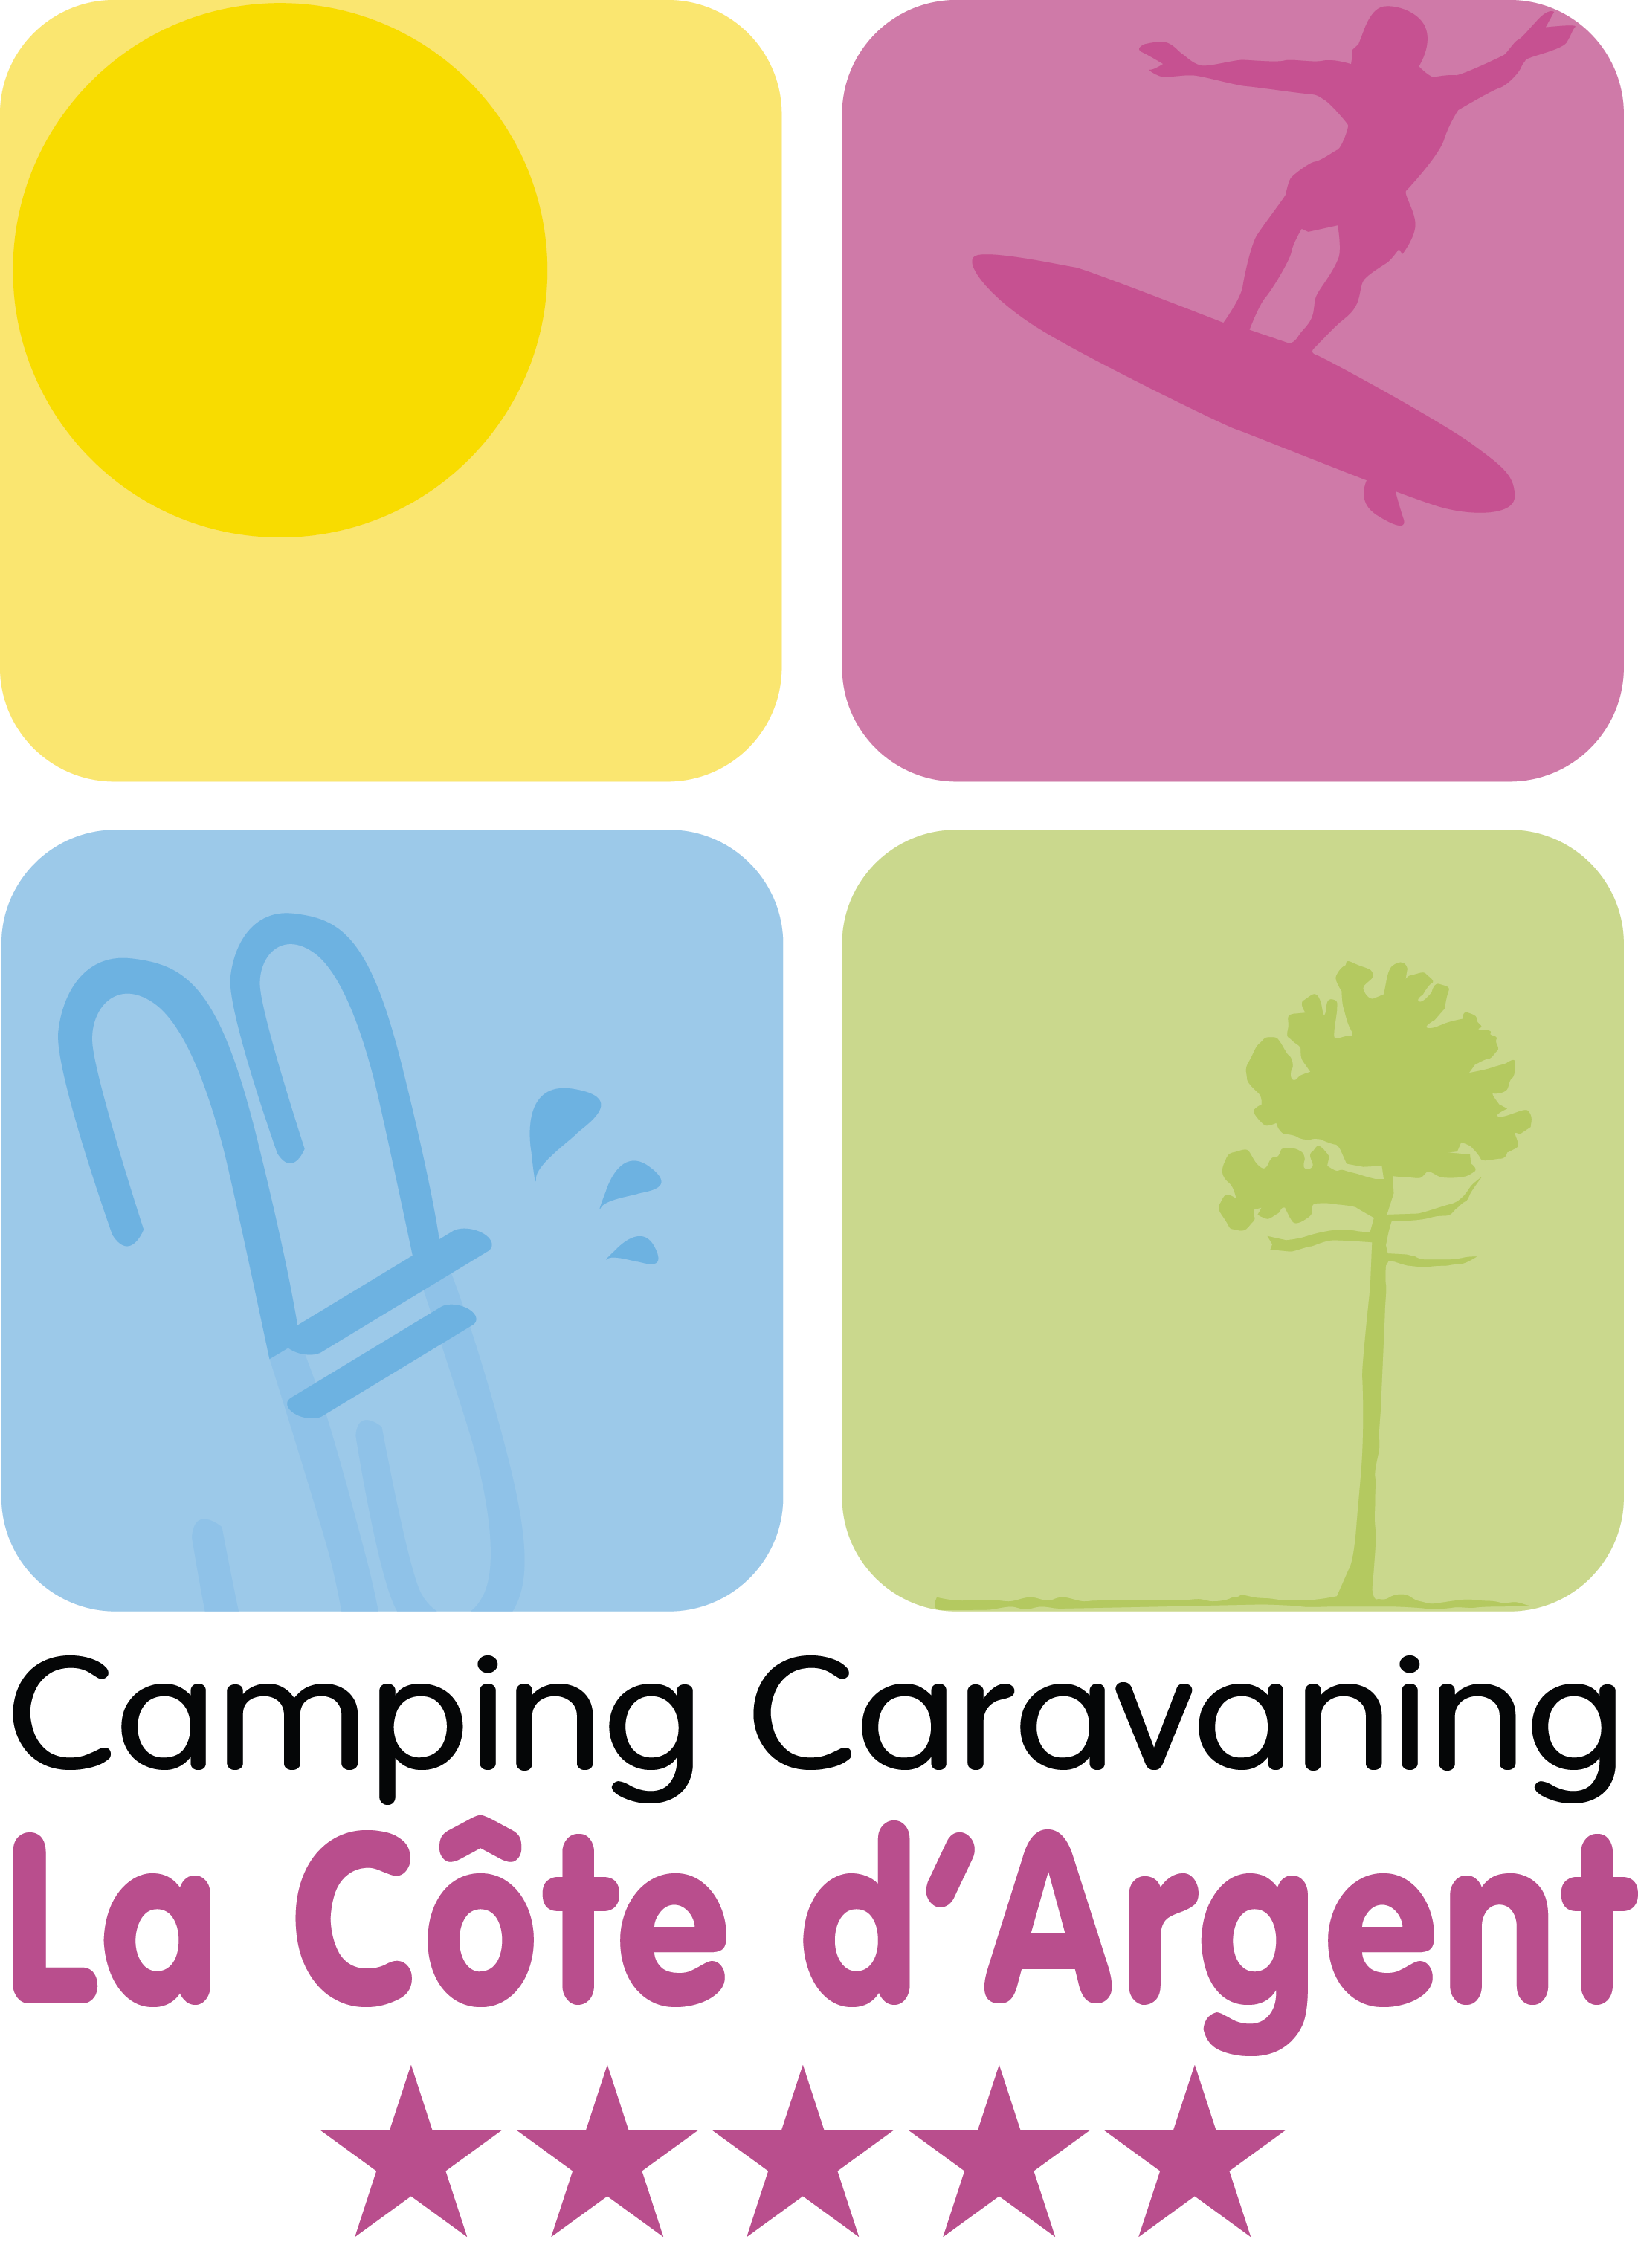 Camping La Côte d'Argent